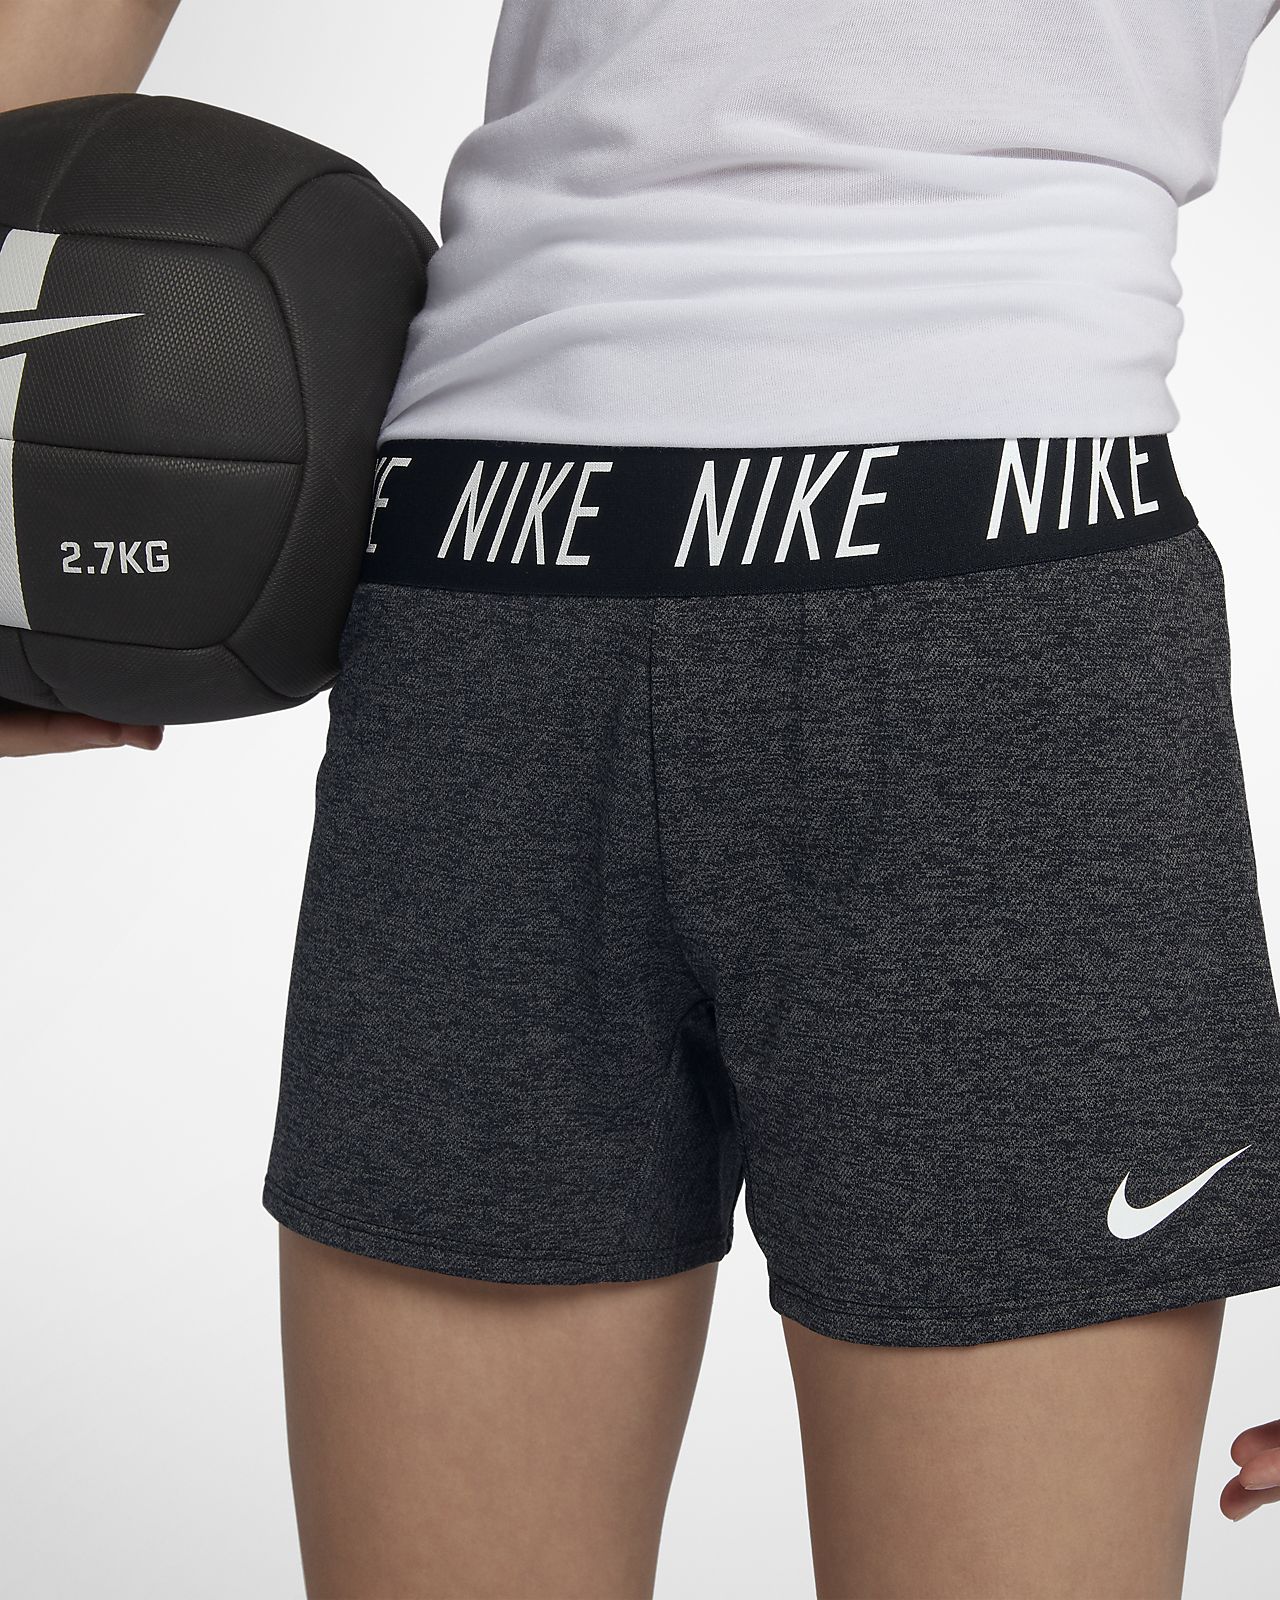 Nike Shorts Size Chart Youth